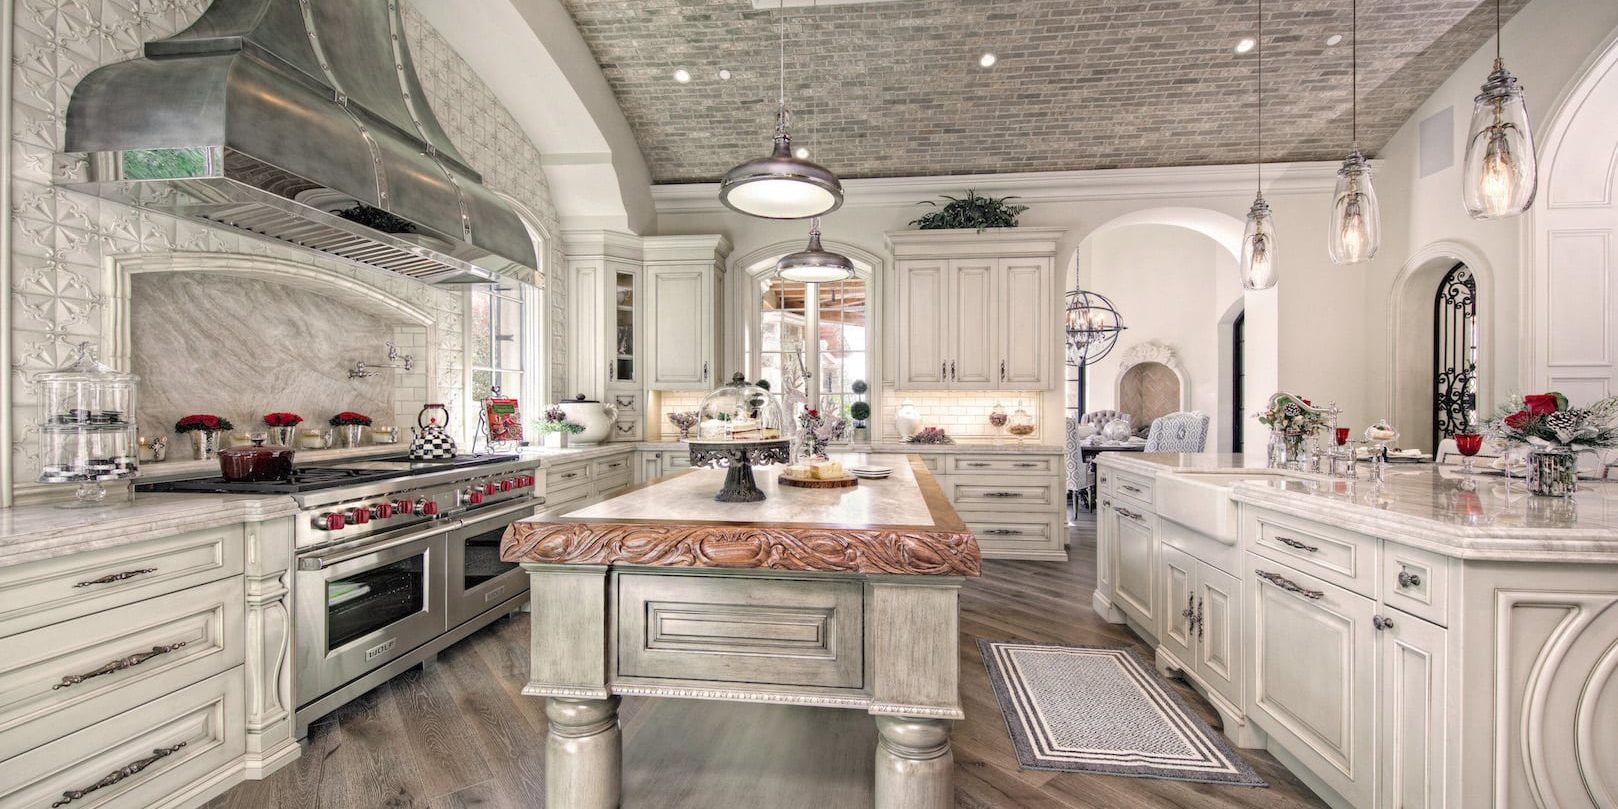 luxury modern kitchen designs 2020 - fratantoni interior